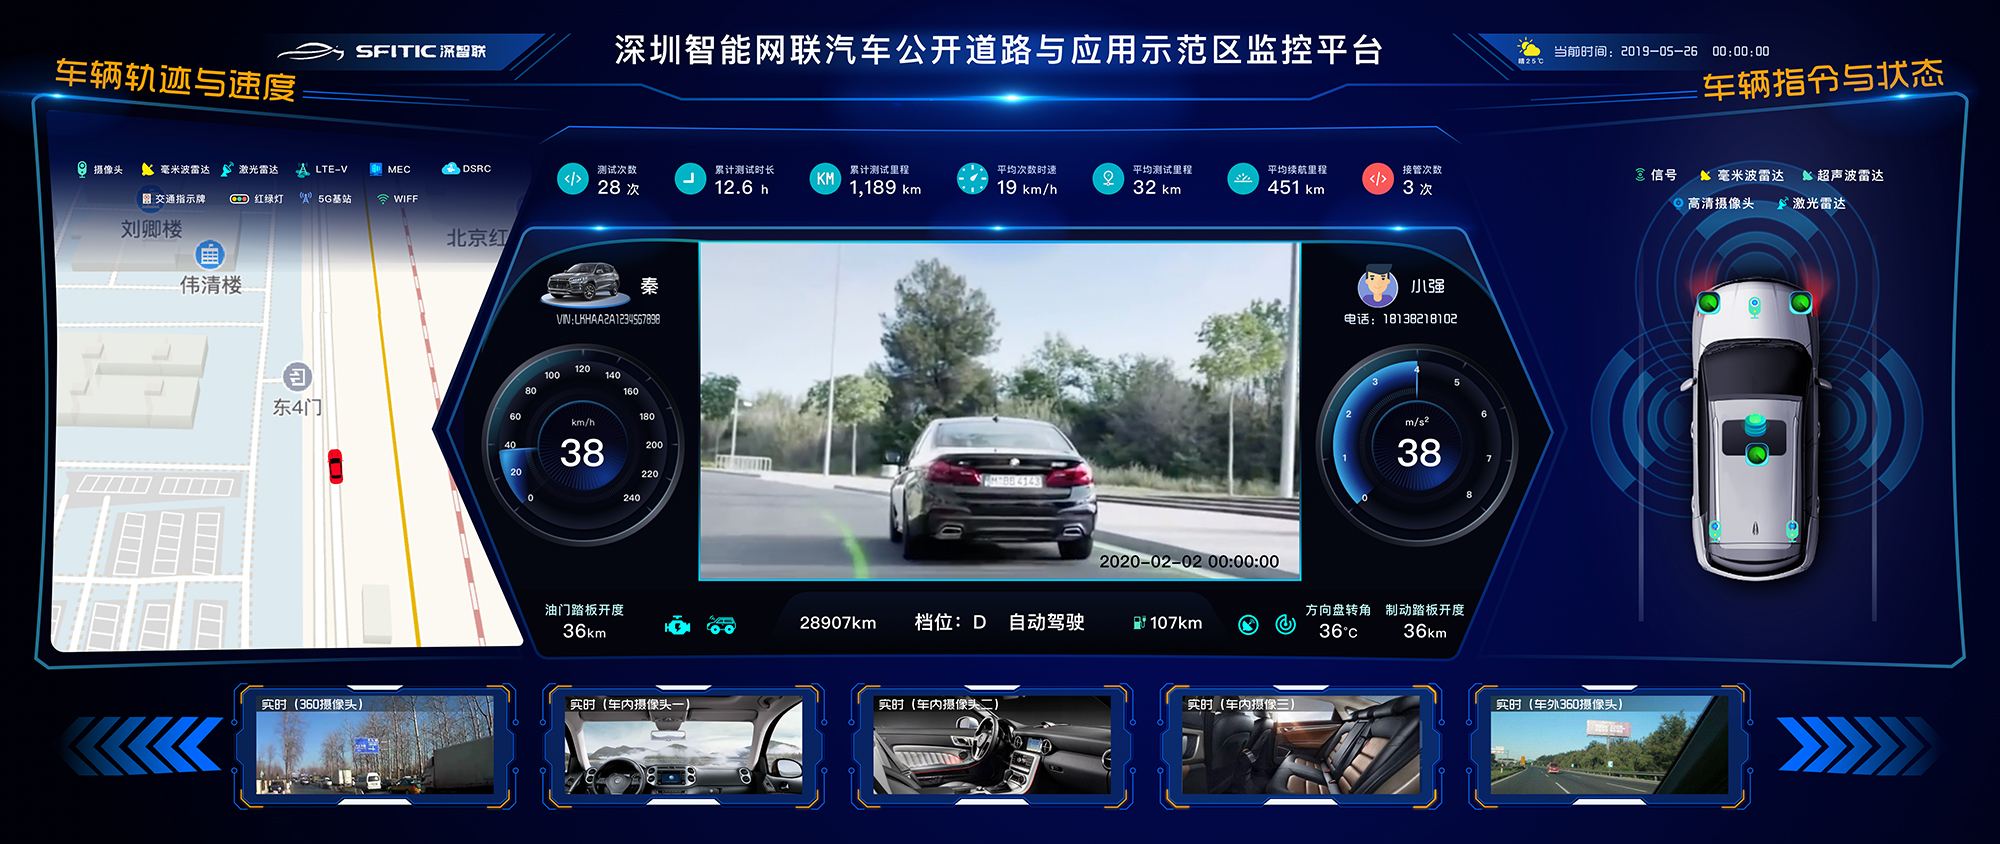 深圳智能网联汽车公开道路与应用示范区监控平台.jpg